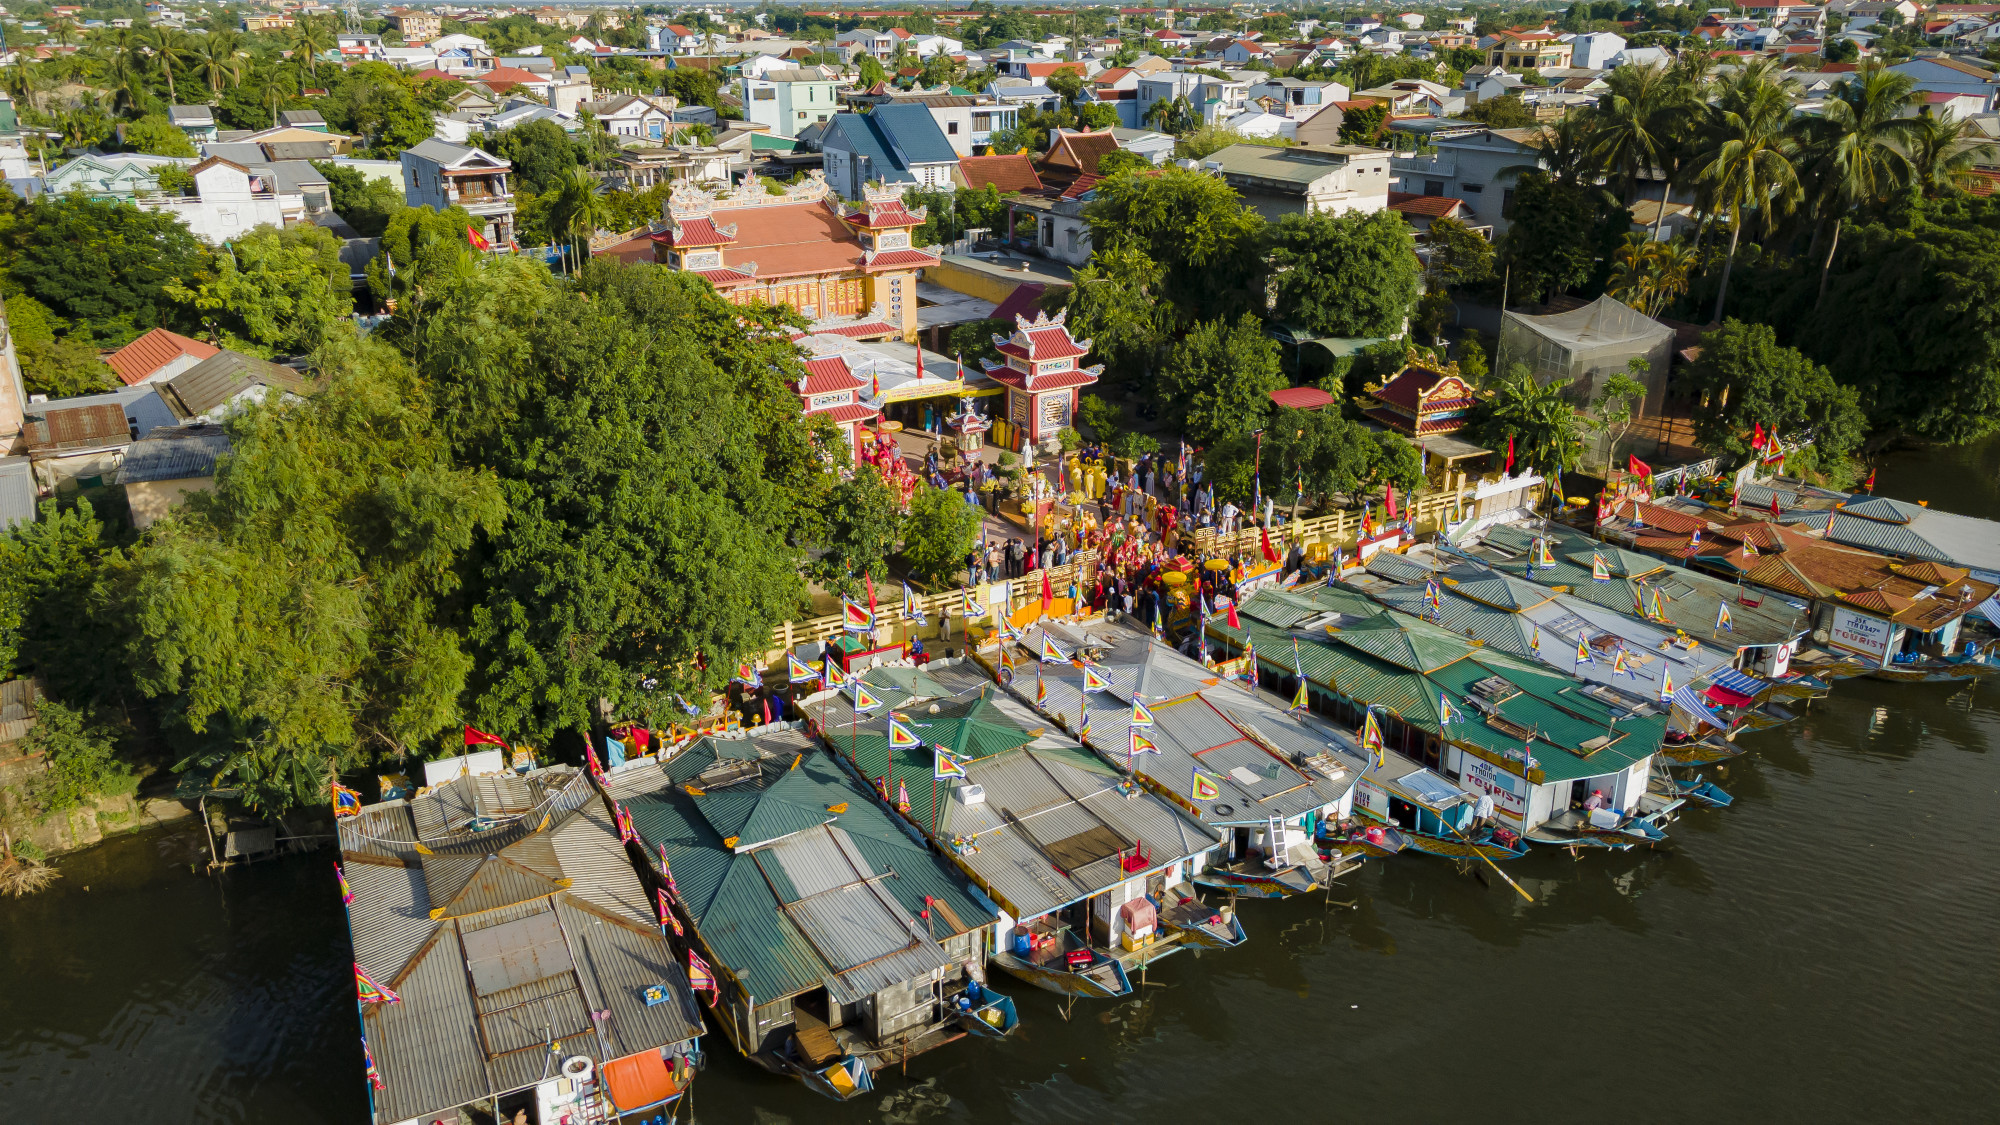 Một trong những nét đặc sắc nhất của Lễ hội là hoạt động rước Thánh Mẫu bằng thuyền trên sông Hương.